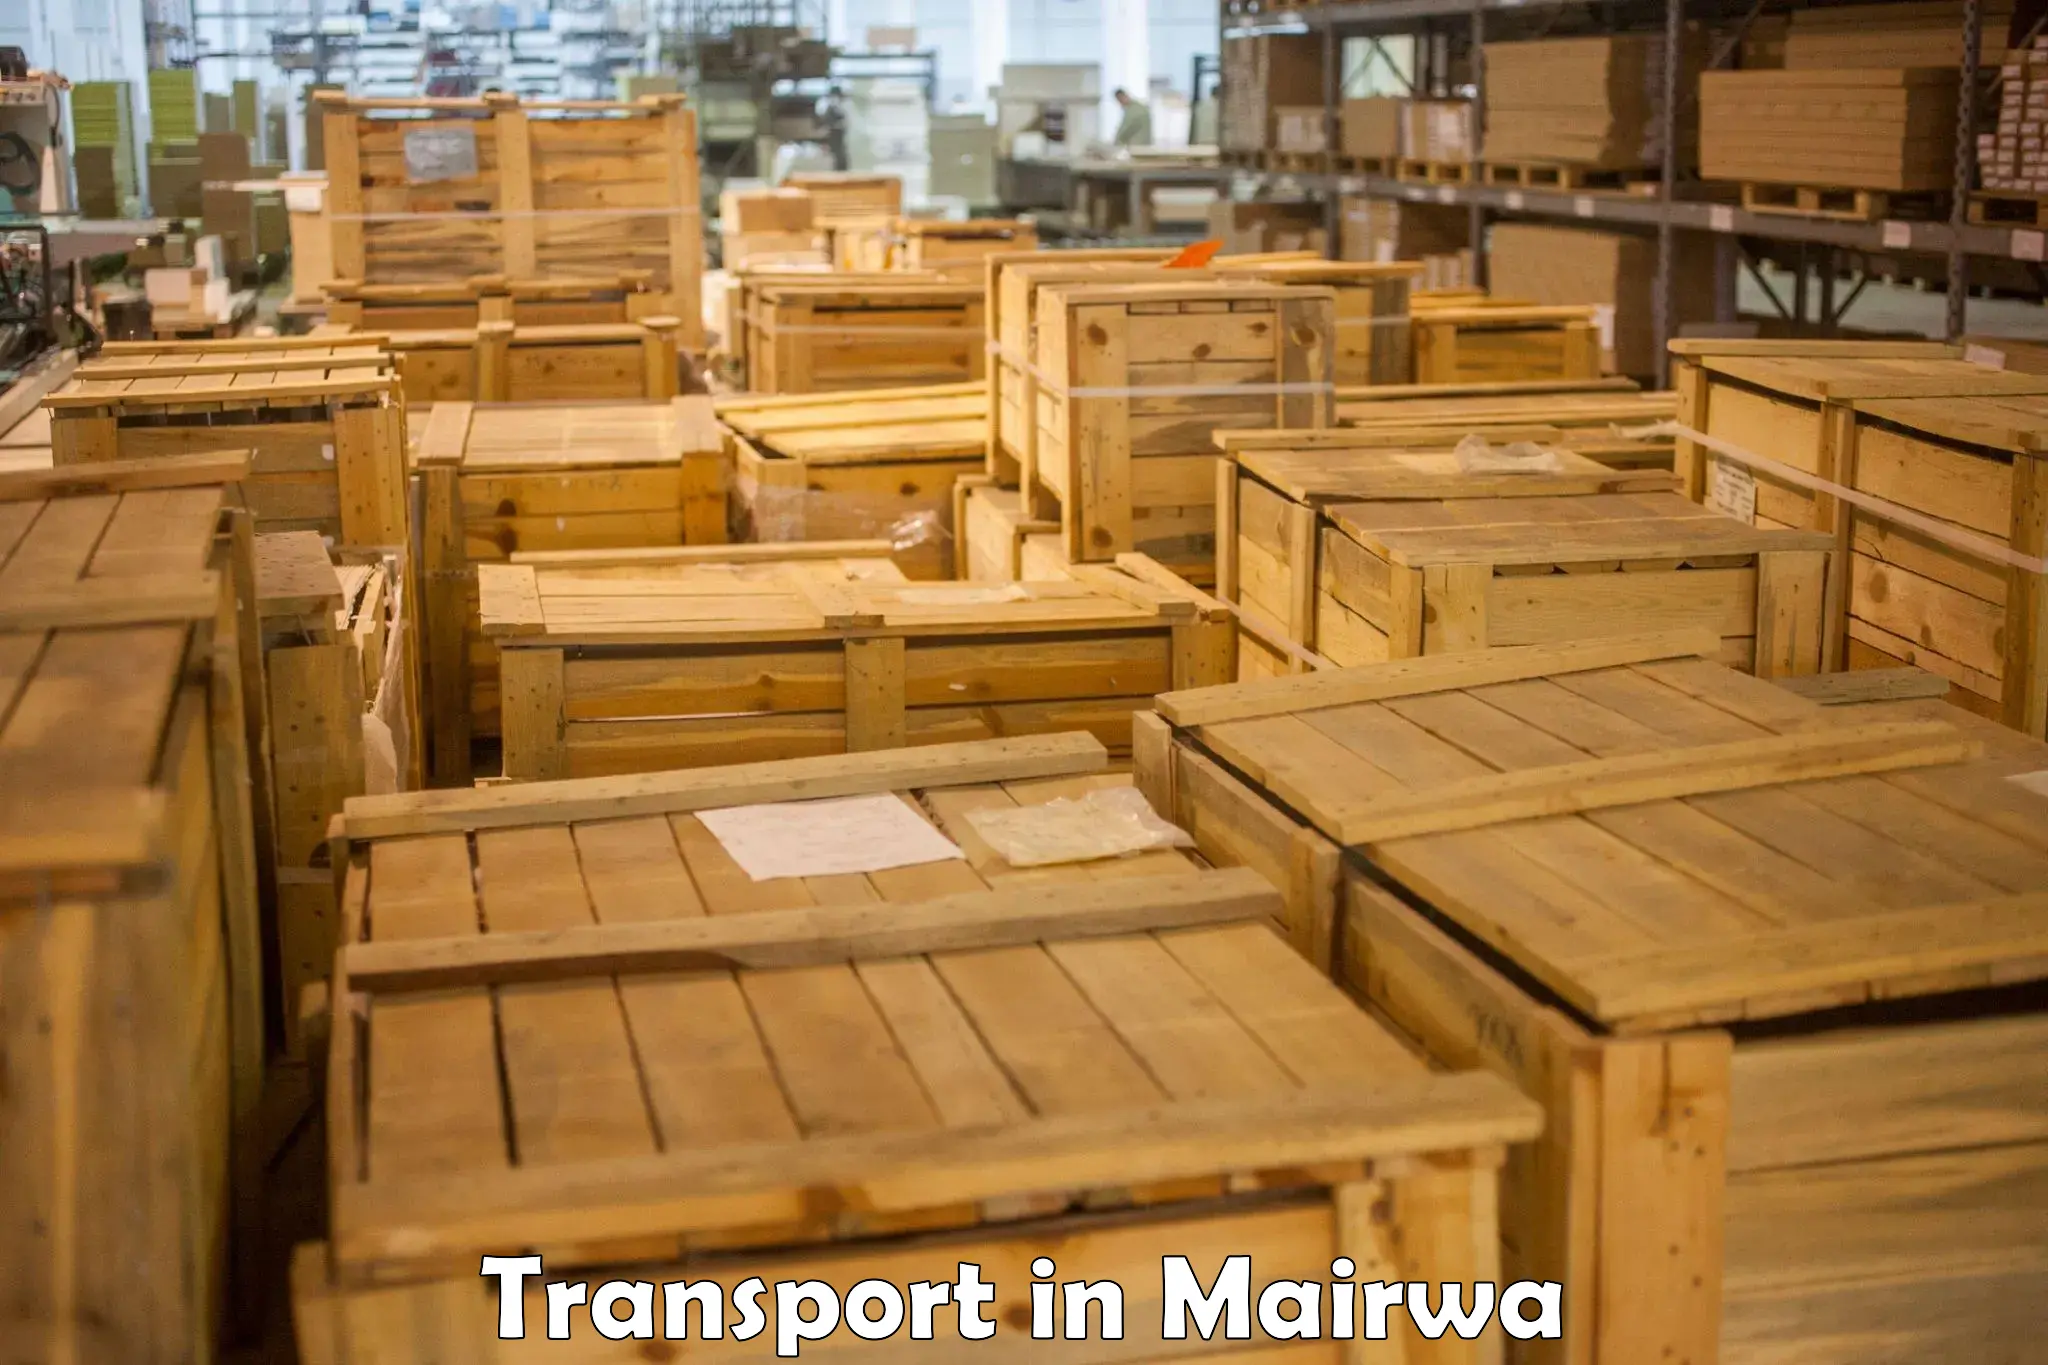 Bike shipping service in Mairwa